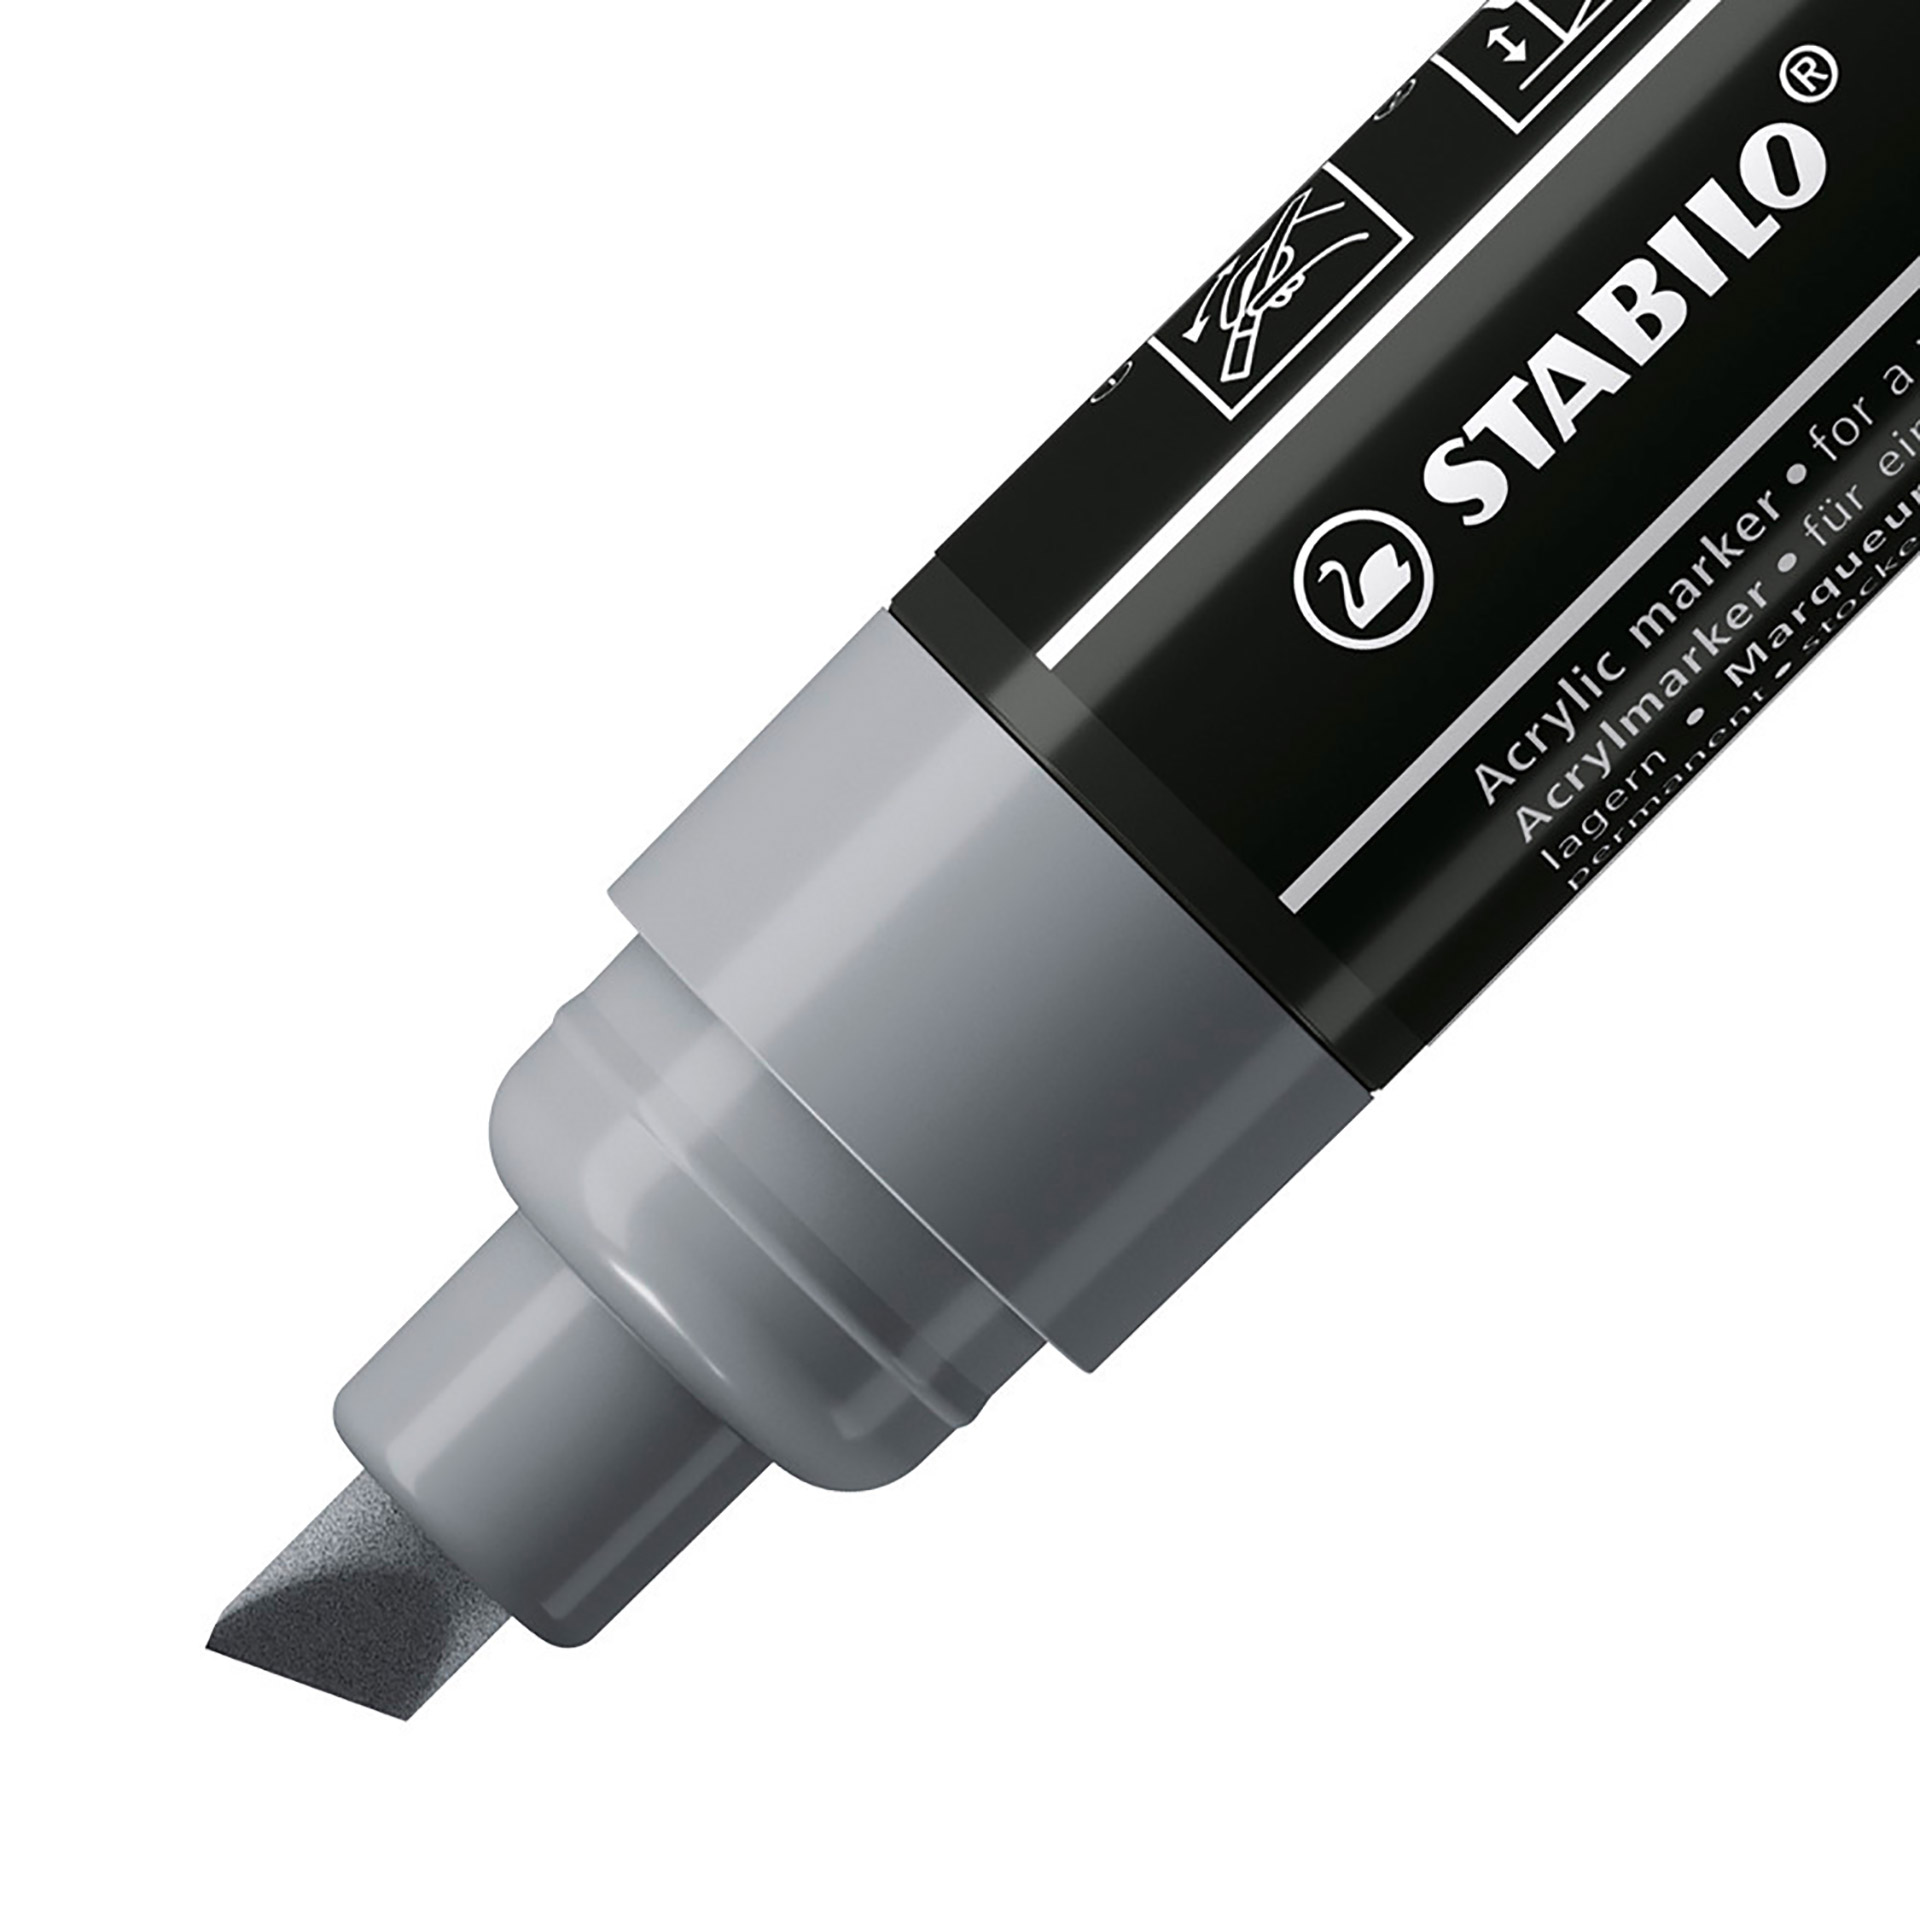 STABILO FREE Acrylic - T800C Punta a scalpello 4-10mm - Confezione da 5 - Grigio, , large